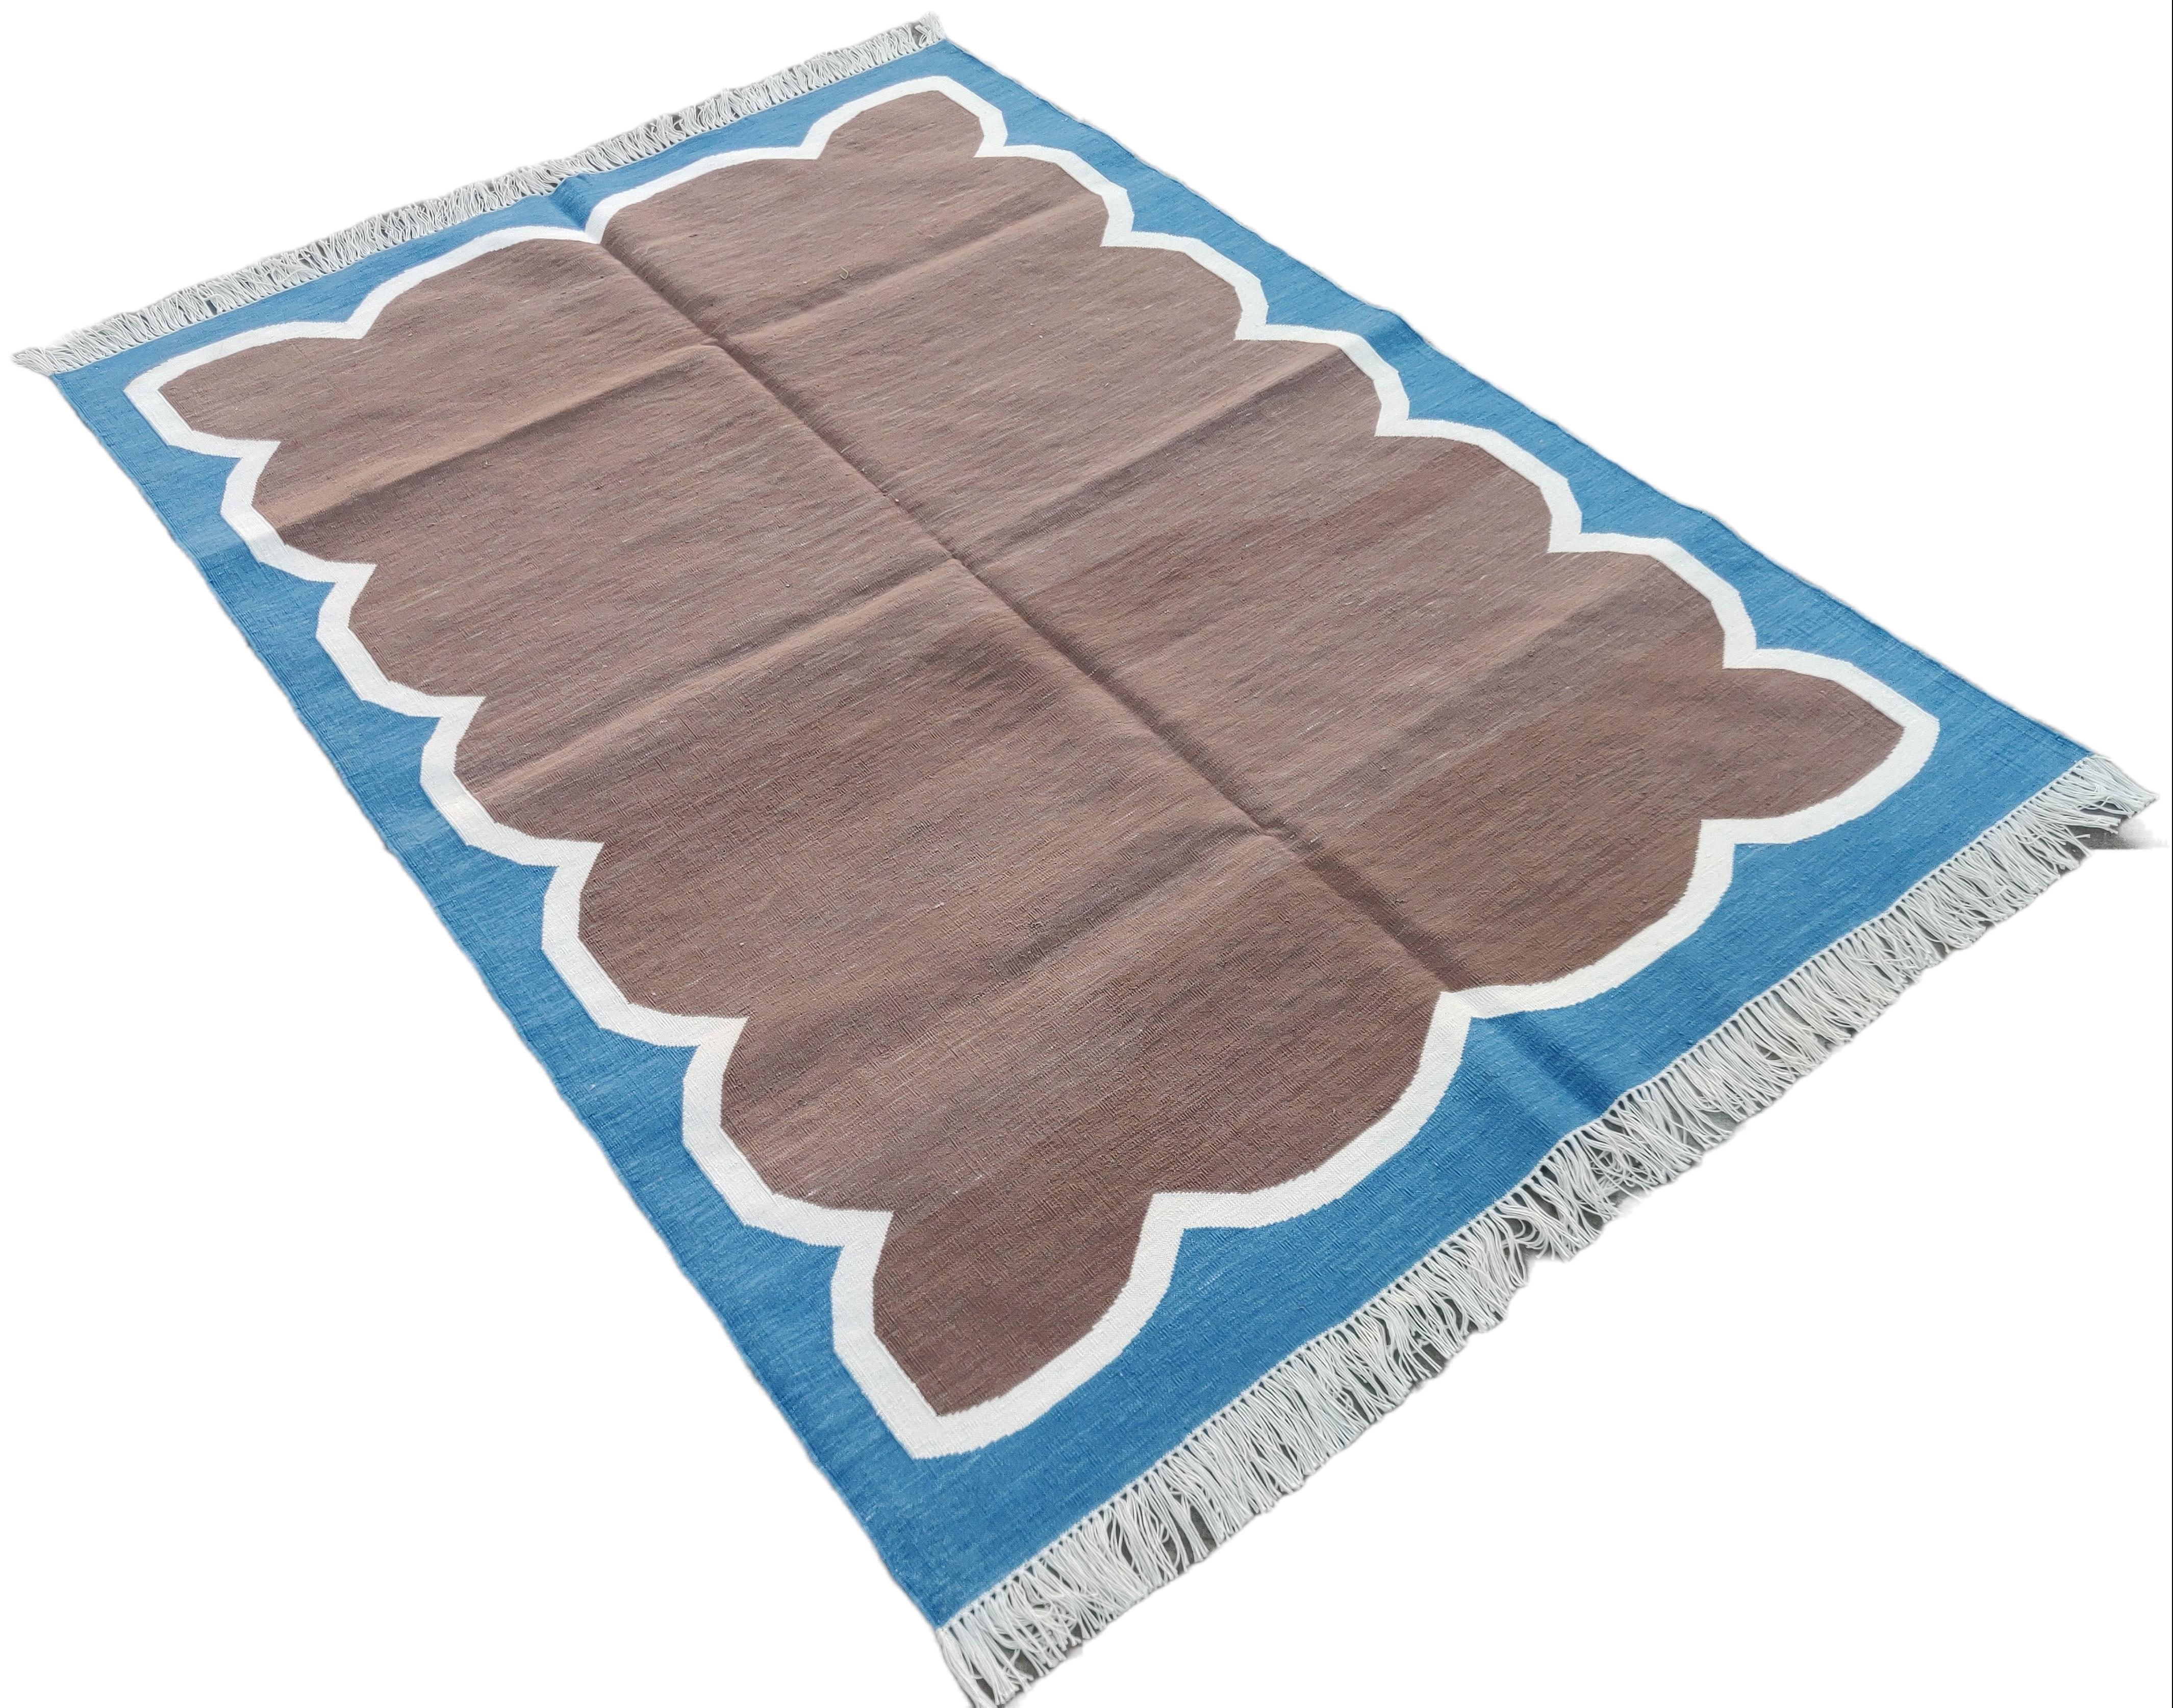 Baumwolle pflanzlich gefärbt Braun und Blau Scalloped Striped Indian Dhurrie Rug-4'x6' 

Diese speziellen flachgewebten Dhurries werden aus 15-fachem Garn aus 100% Baumwolle handgewebt. Aufgrund der speziellen Fertigungstechniken, die zur